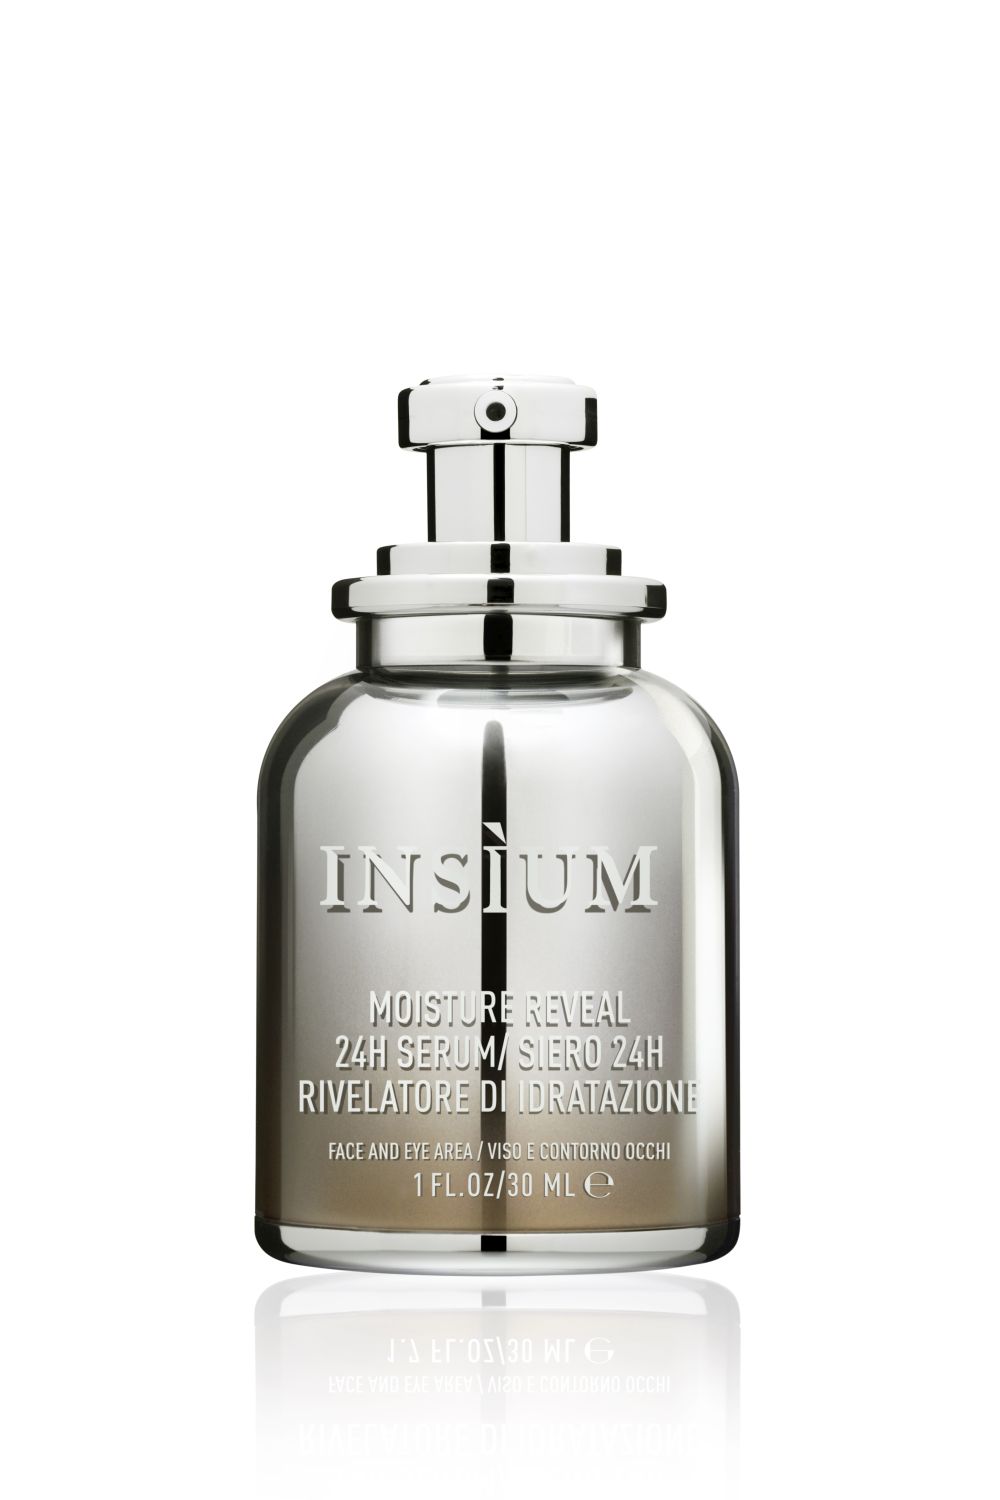 Insium - Moisture Reveal 24h Serum -  Gesichtsserum 30 ml 